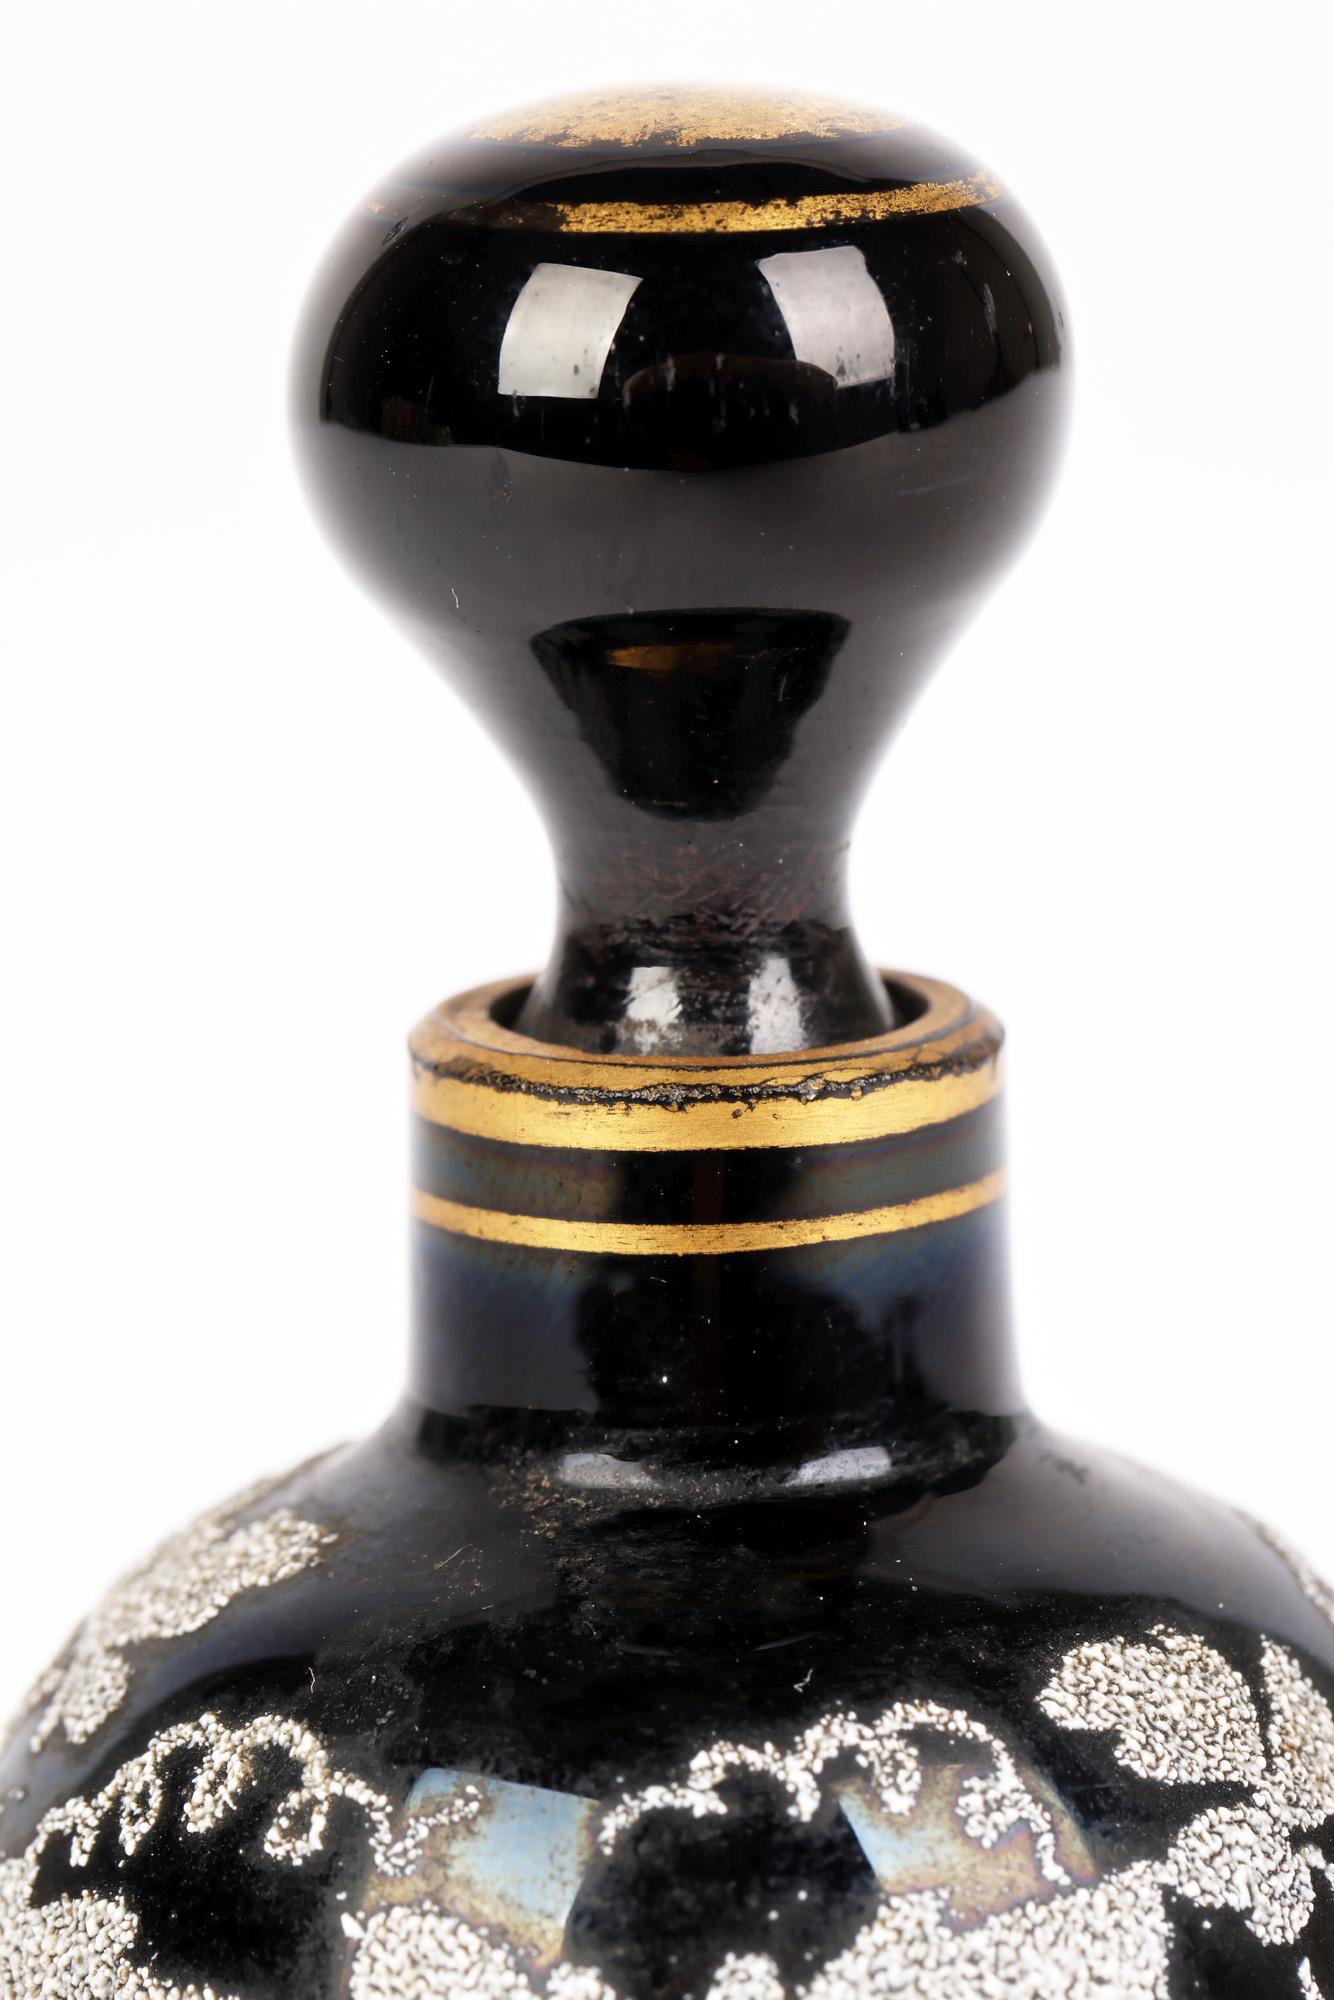 Un flacon de parfum Fin De Siecle en verre soufflé à la main de très belle facture et un bouchon décoré de feuilles de vigne et datant de la seconde moitié du 19ème siècle. Ce petit corps très finement fabriqué provient probablement de l'un des